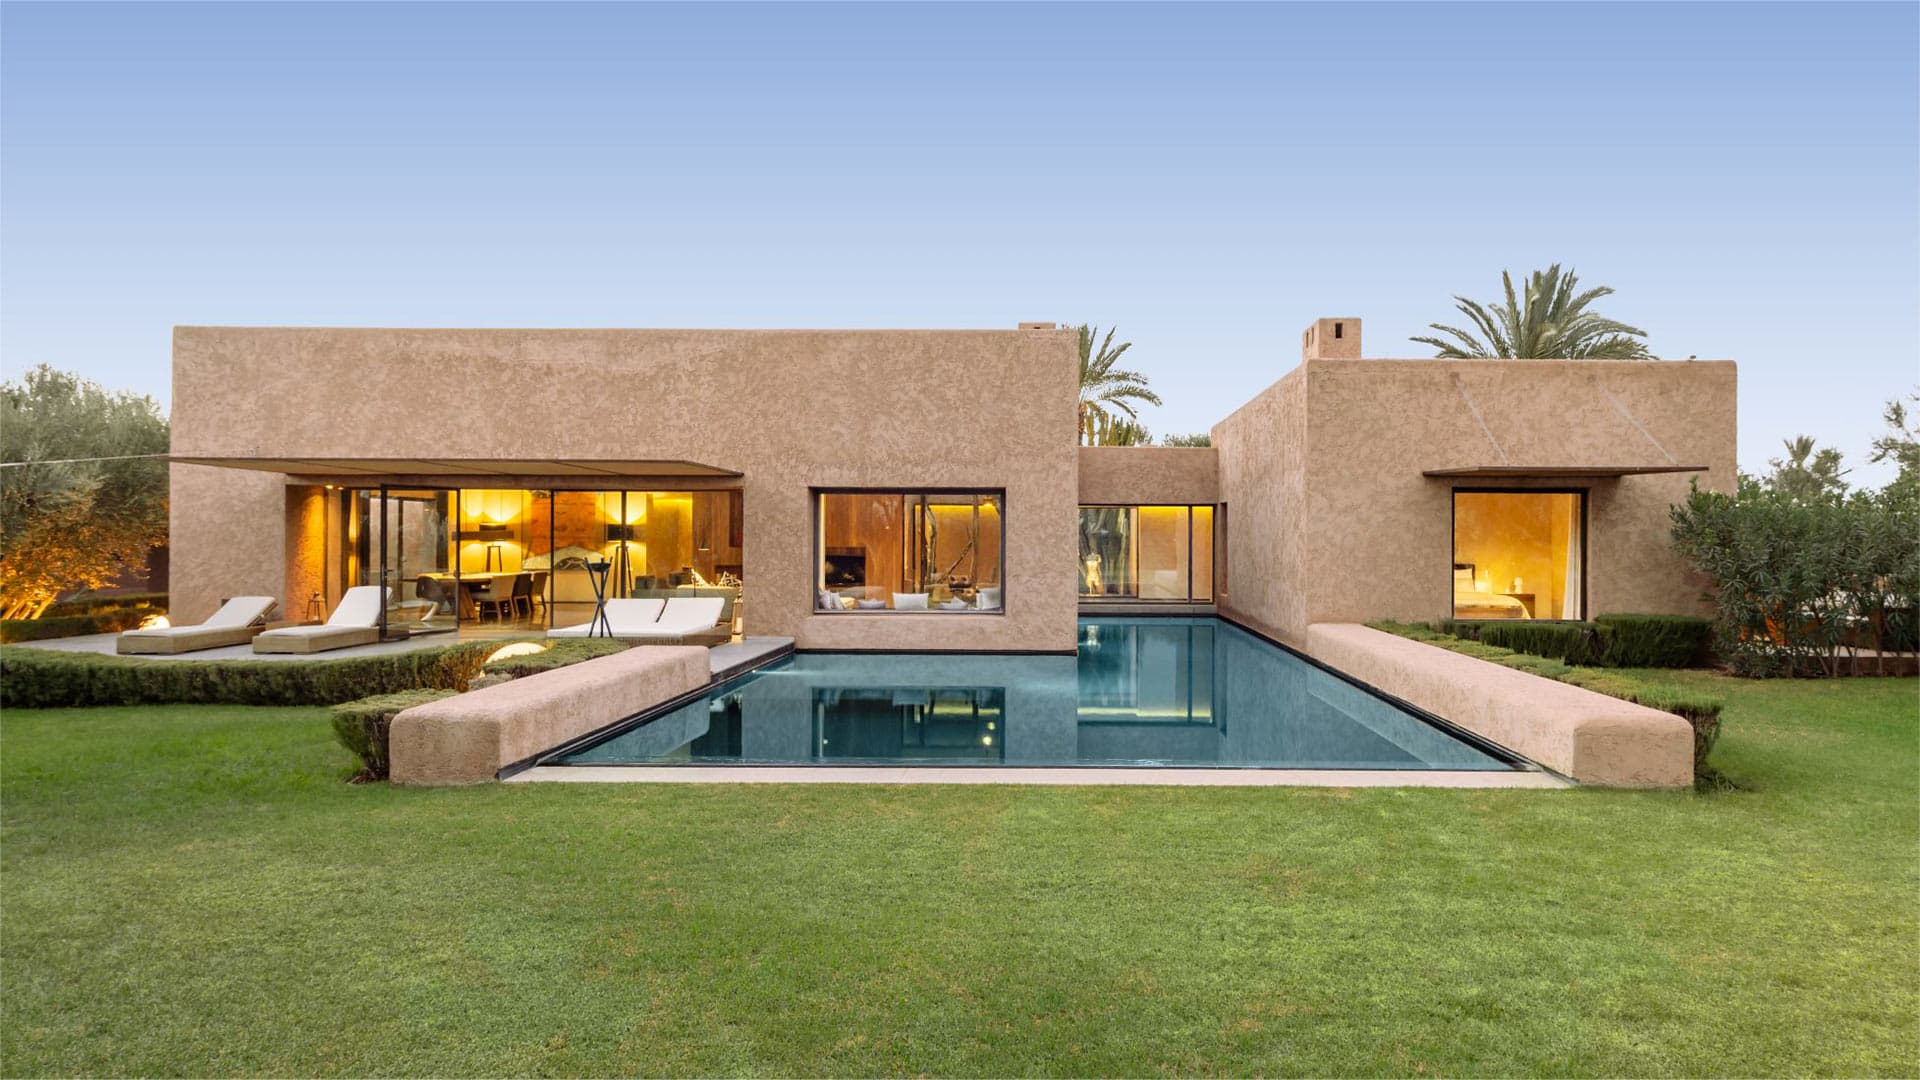 Villa Villa RL, Rental in Marrakech